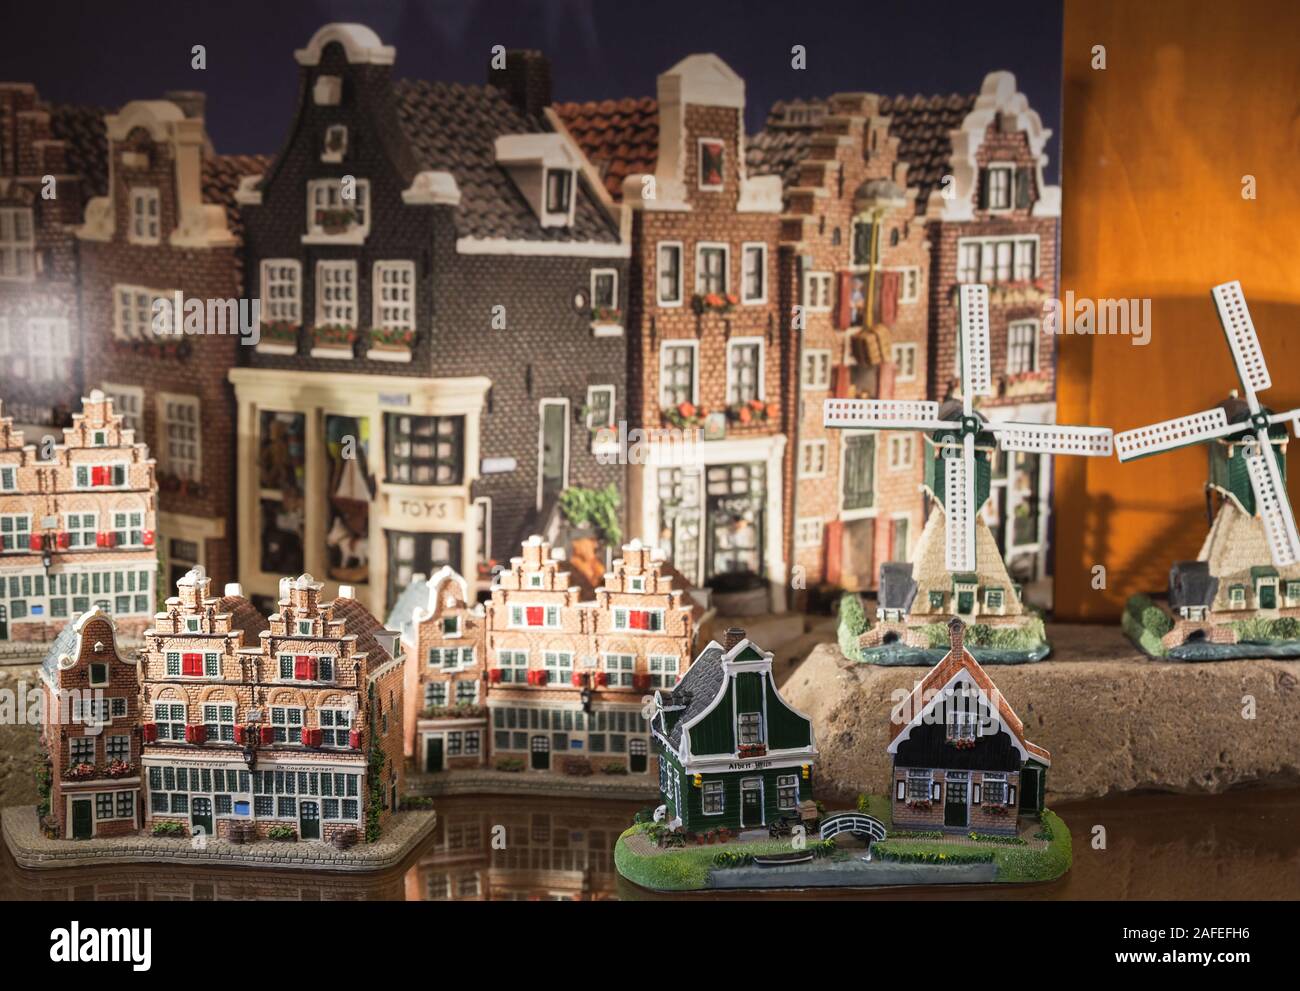 Amsterdam Modell Stadtansicht 2 Häuser Holland Niederlande Souvenir 8273 